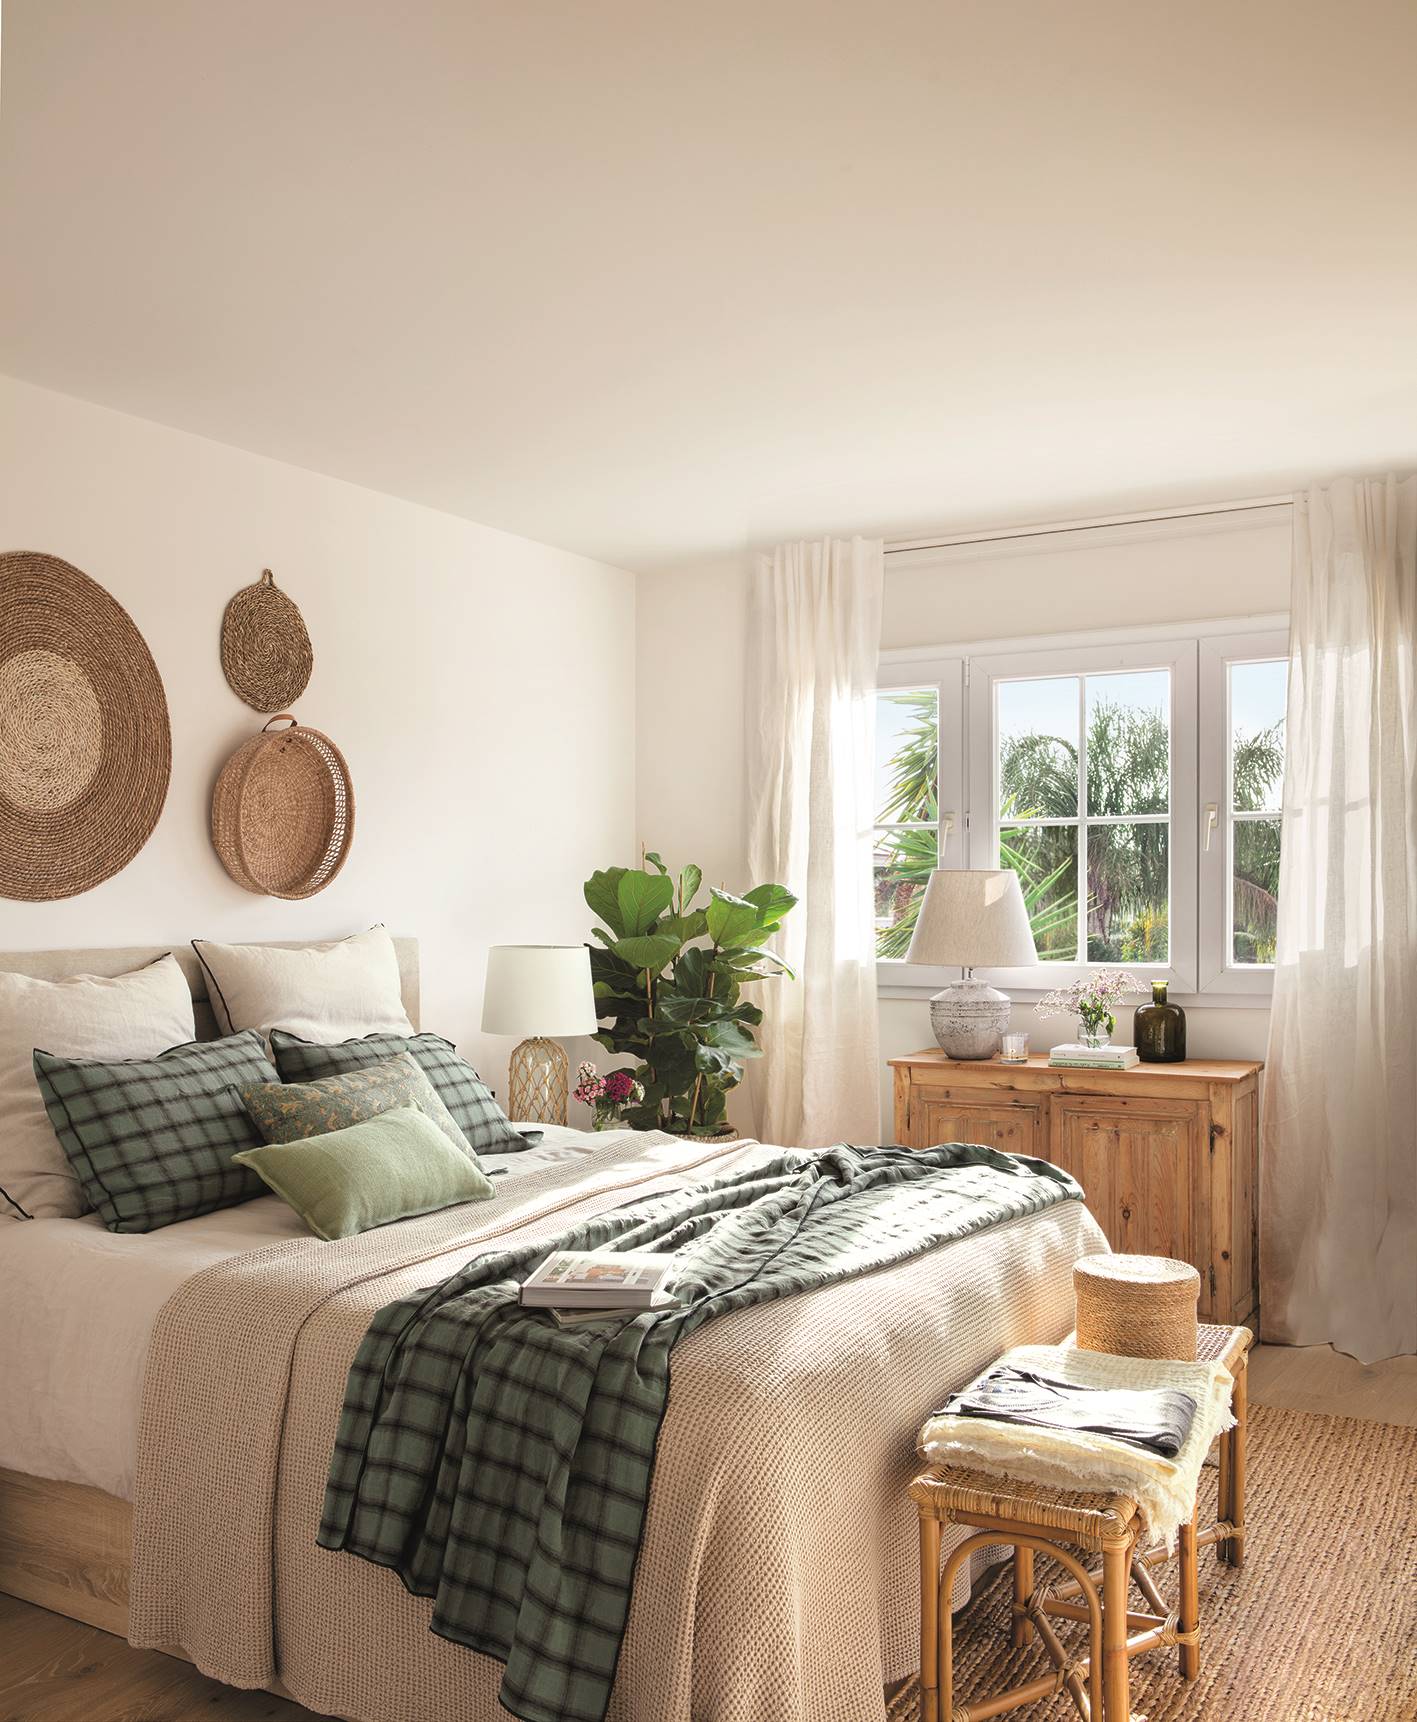 Dormitorio con muebles de madera y adornos de fibra natural.